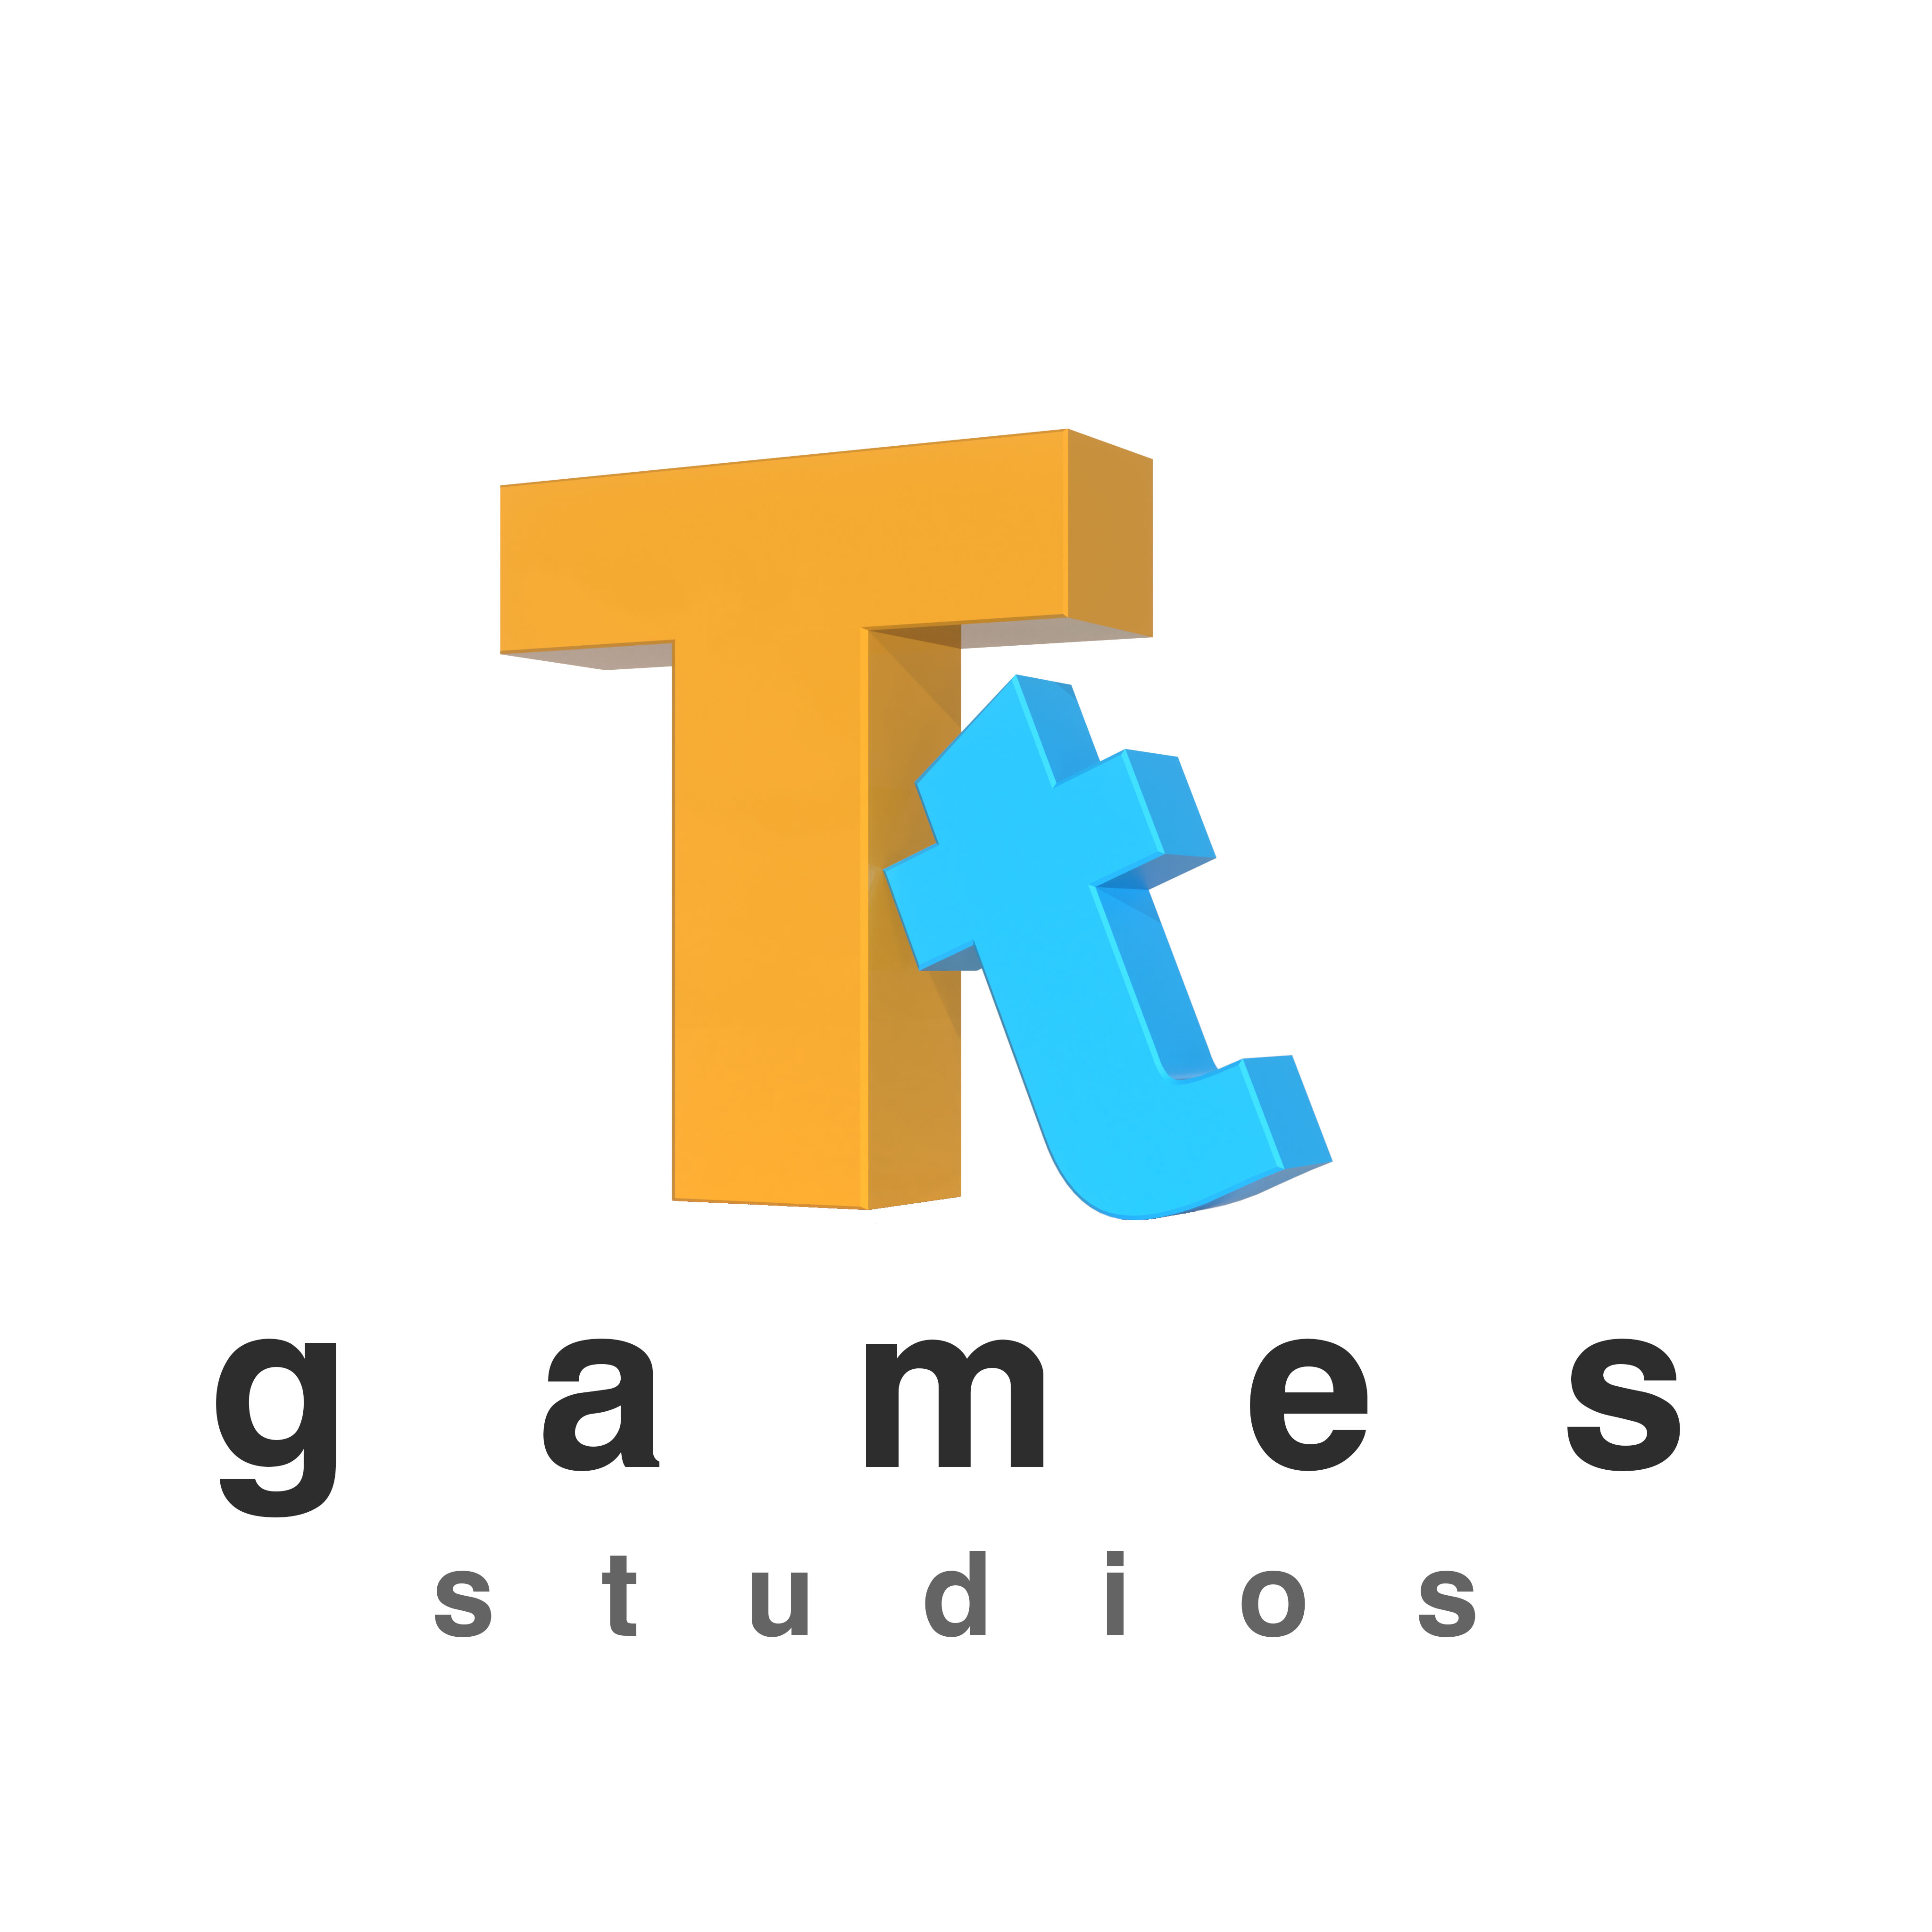 TT Games